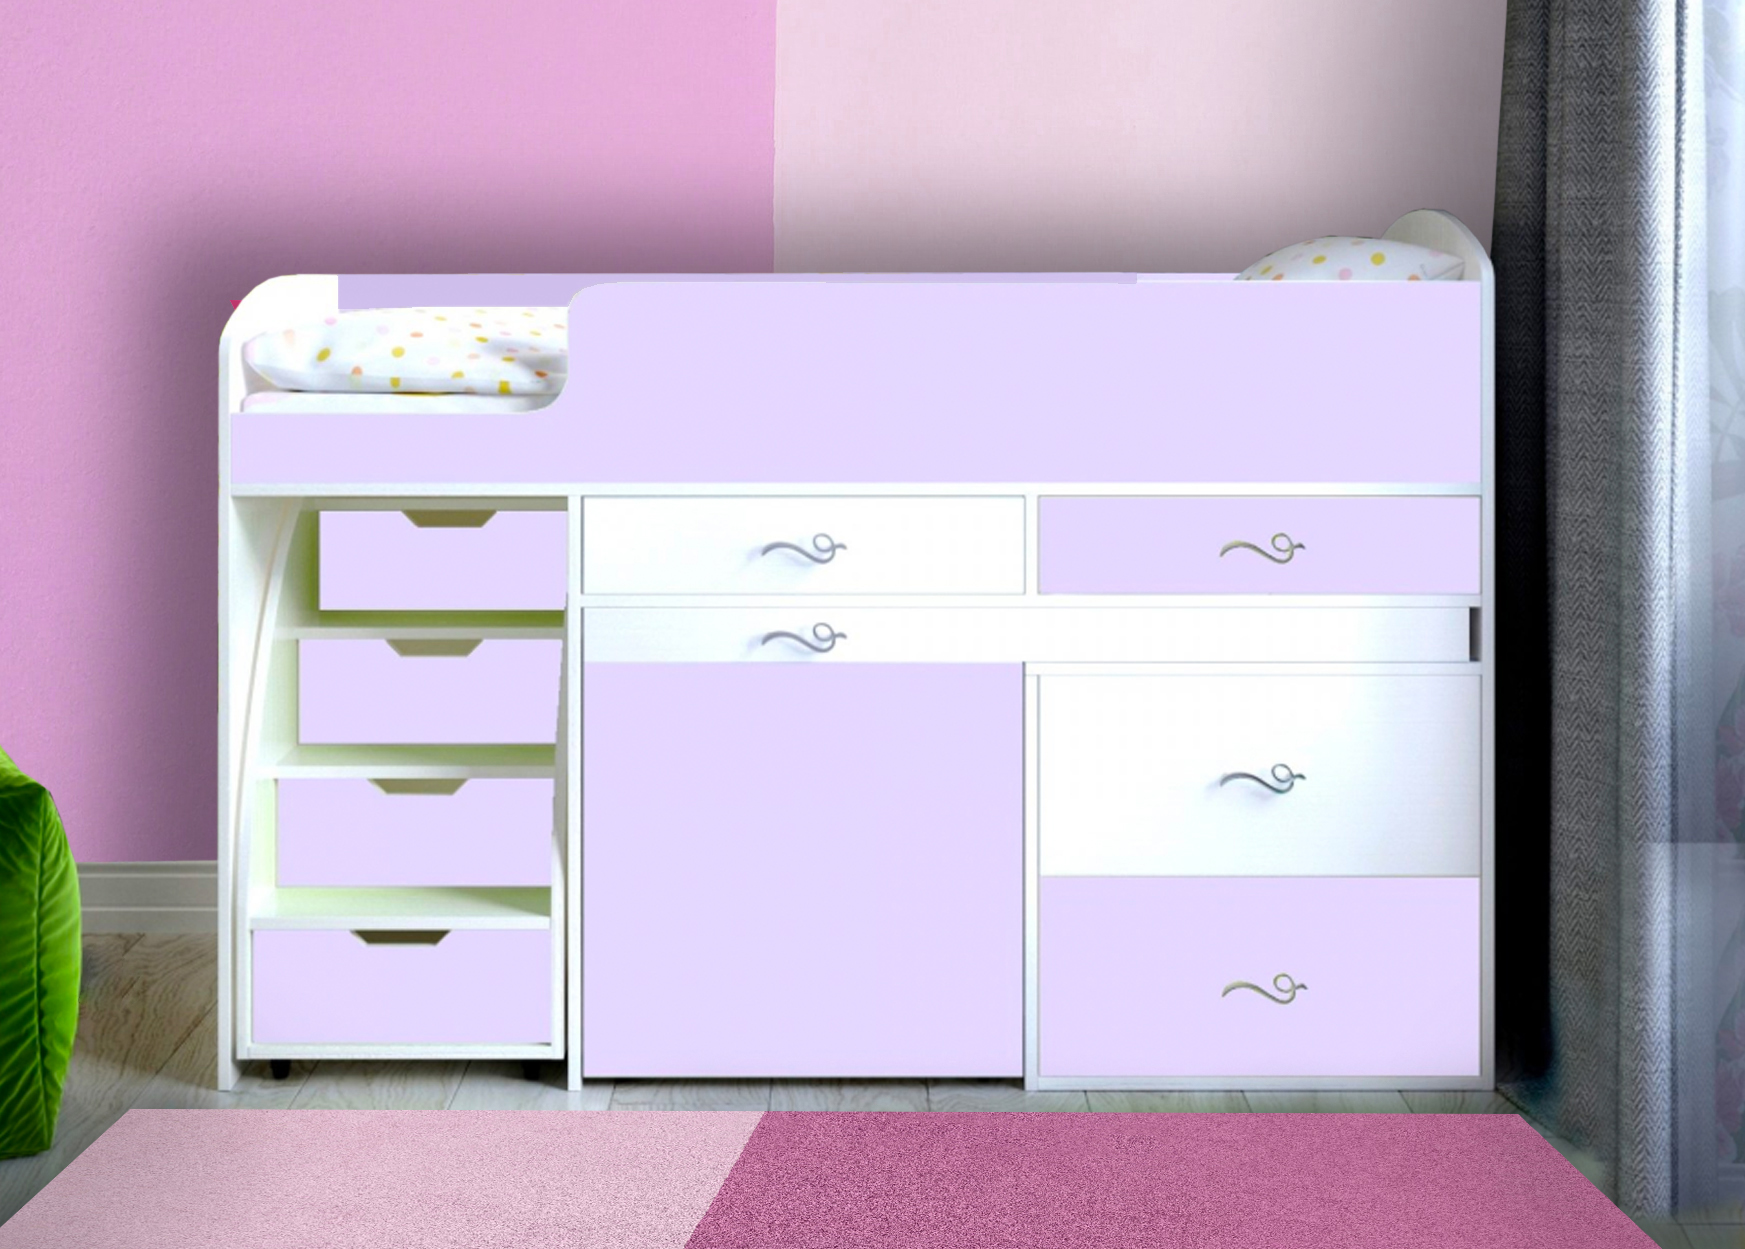 кровать чердак малыш розовый